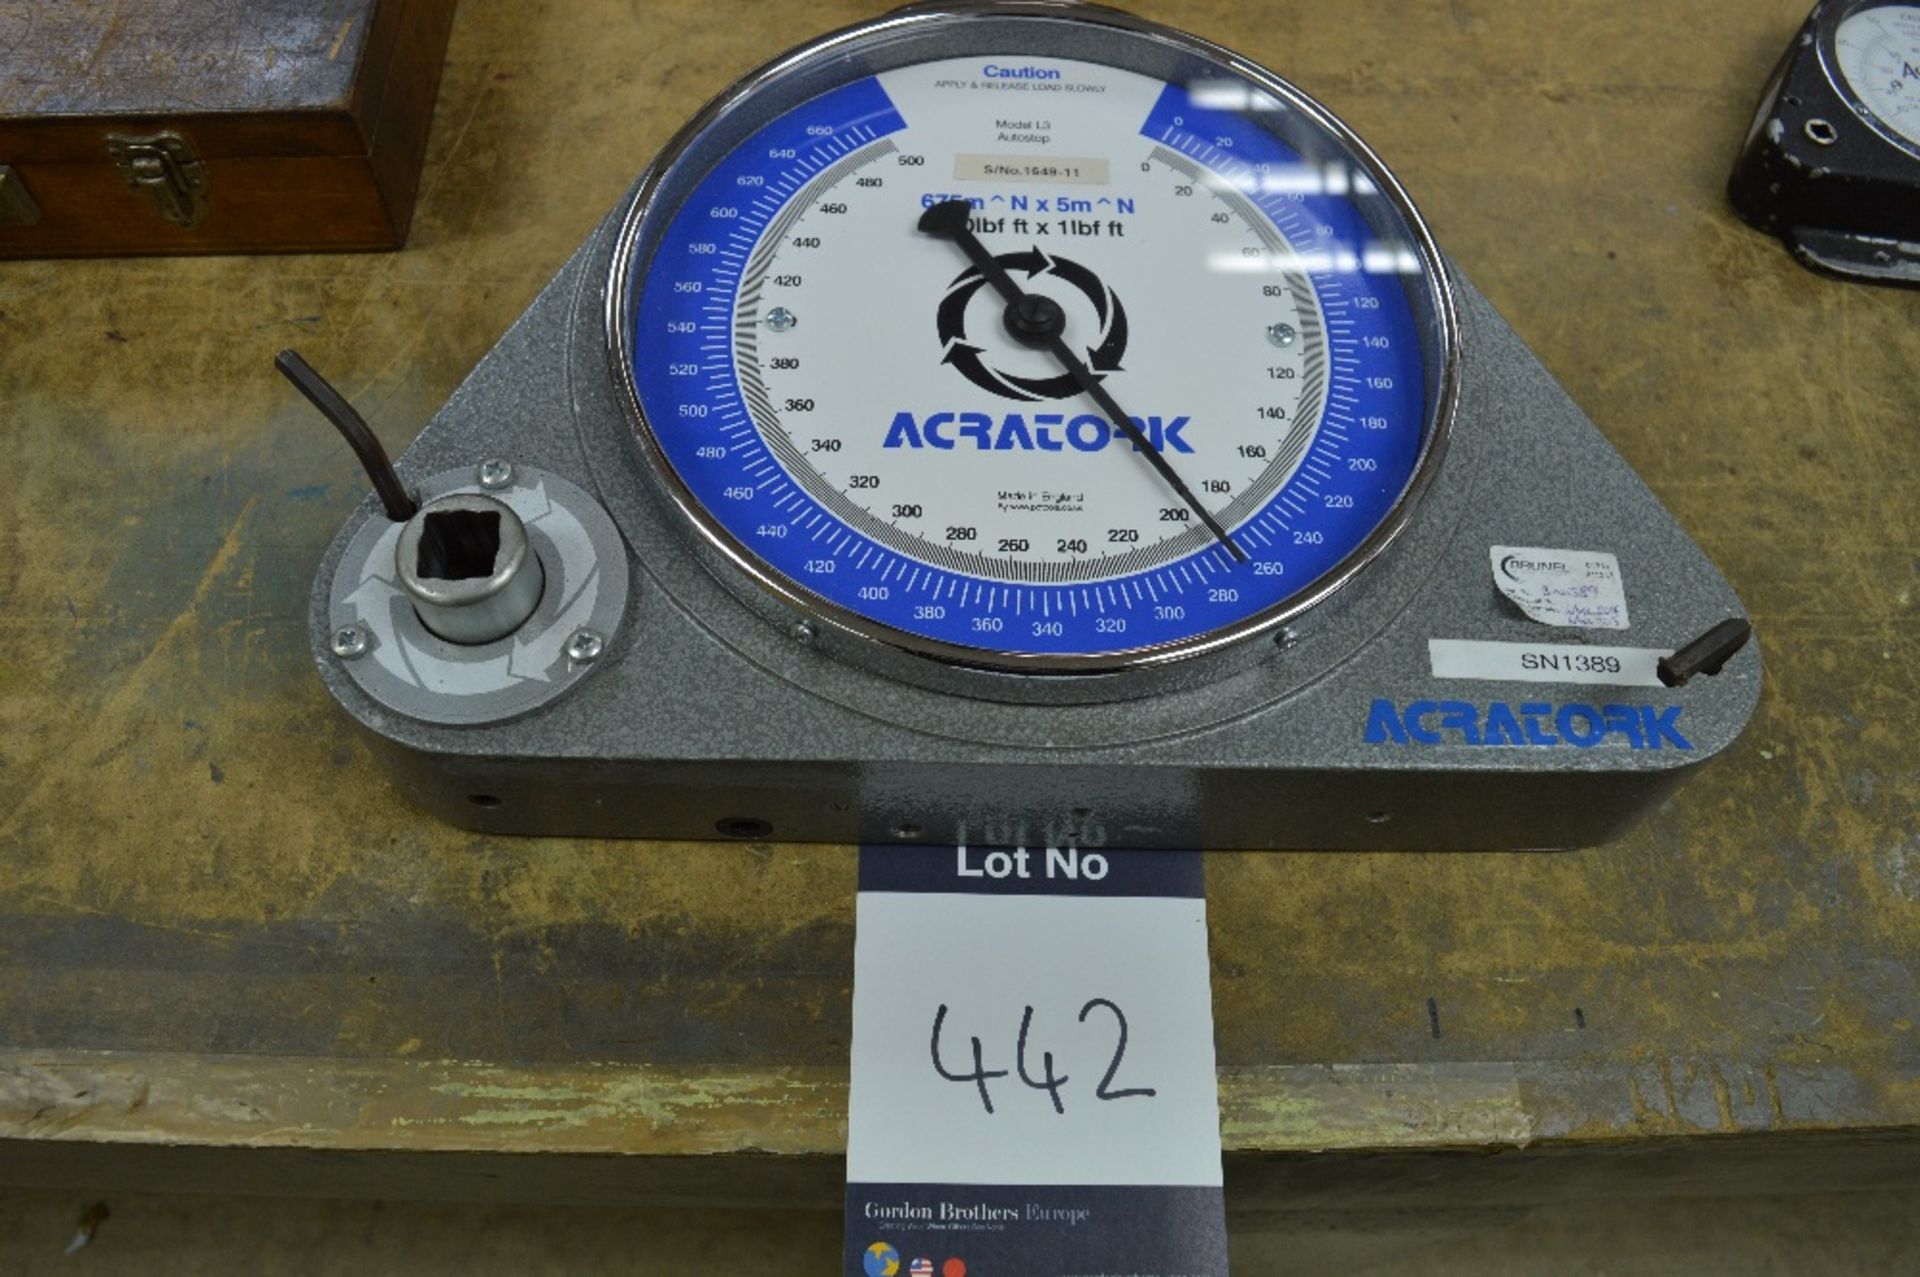 Acratork, Model: L3, Torque Gauge
Serial Number: 1